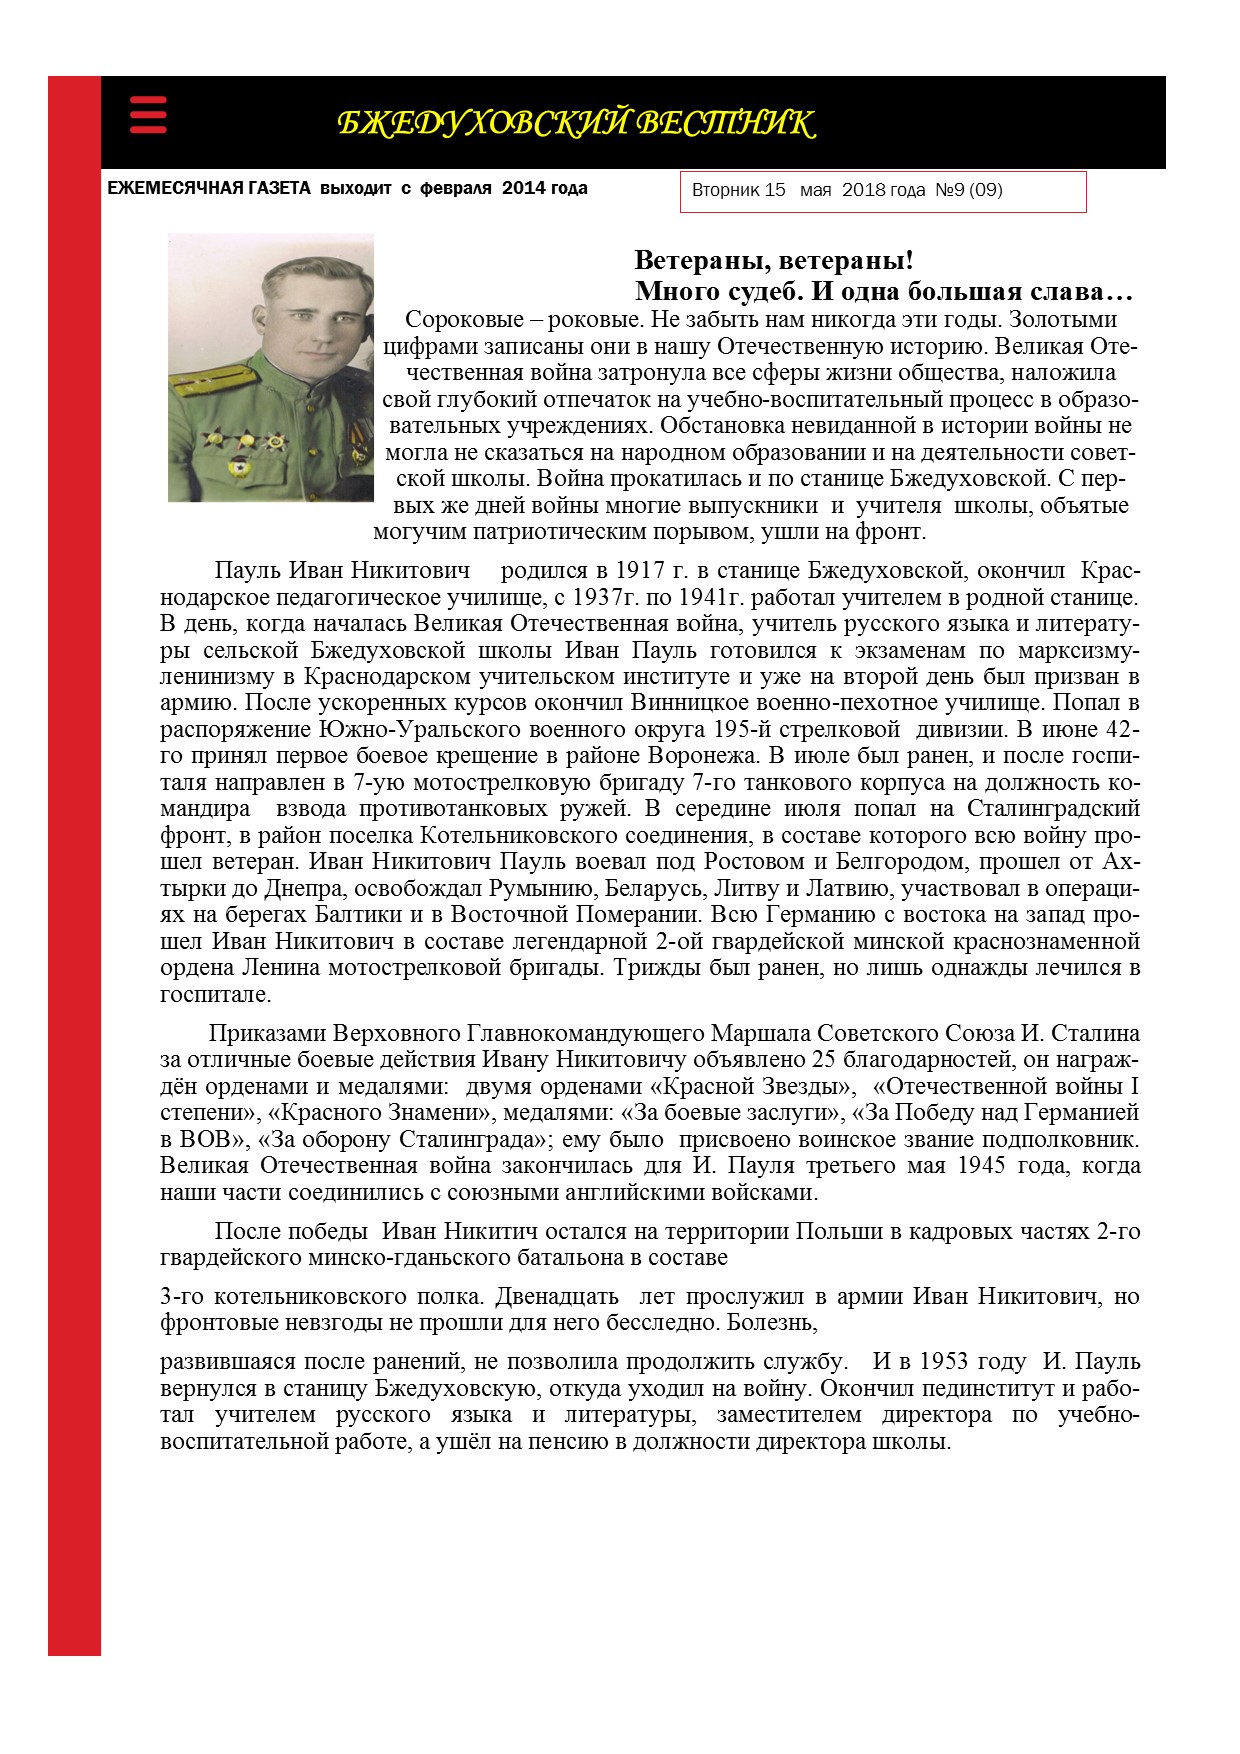 Bsheduhovskiy vestnik 9 2018 1